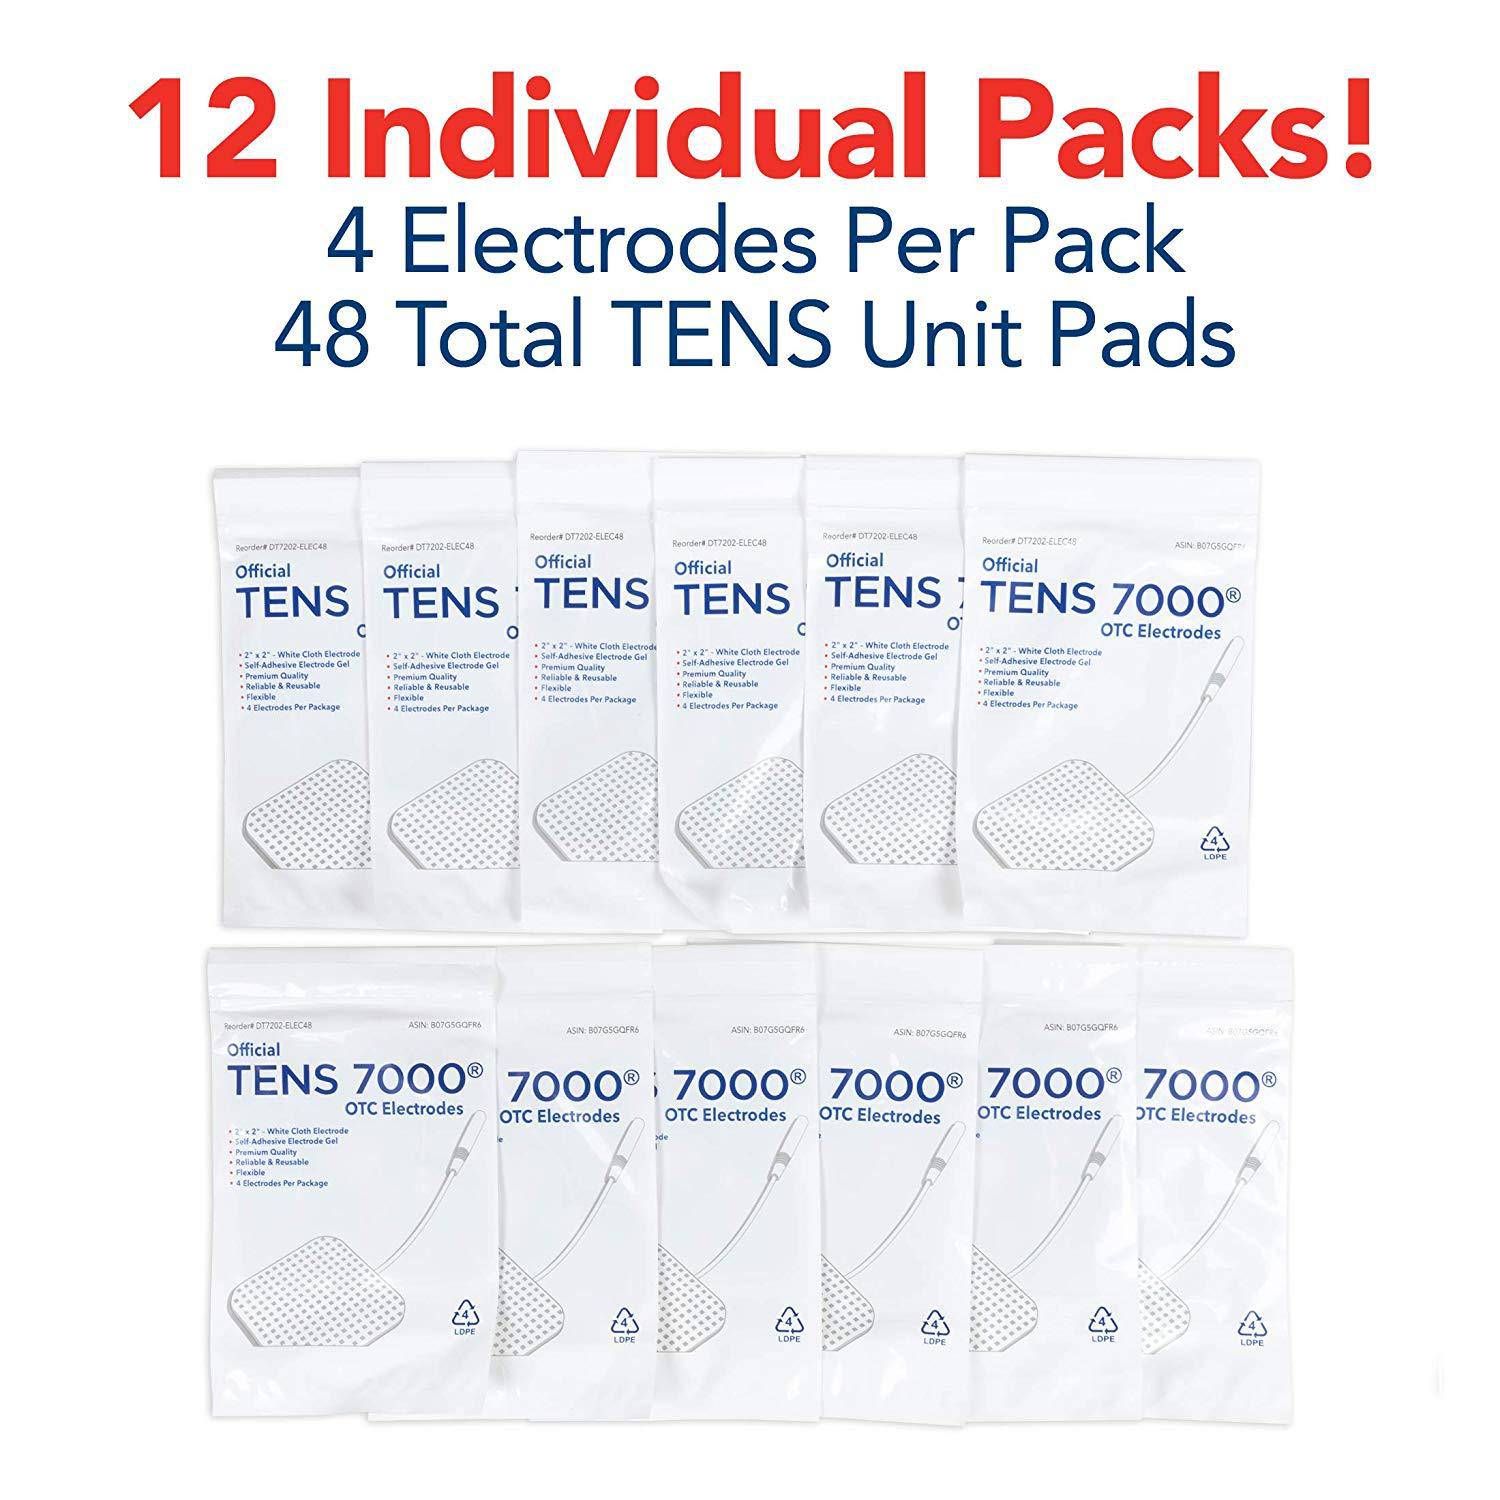 https://carex.com/cdn/shop/products/carex-com-electrodes-48-pack-tens-7000-official-electrodes-multi-pack-28288415072361.jpg?v=1679952375